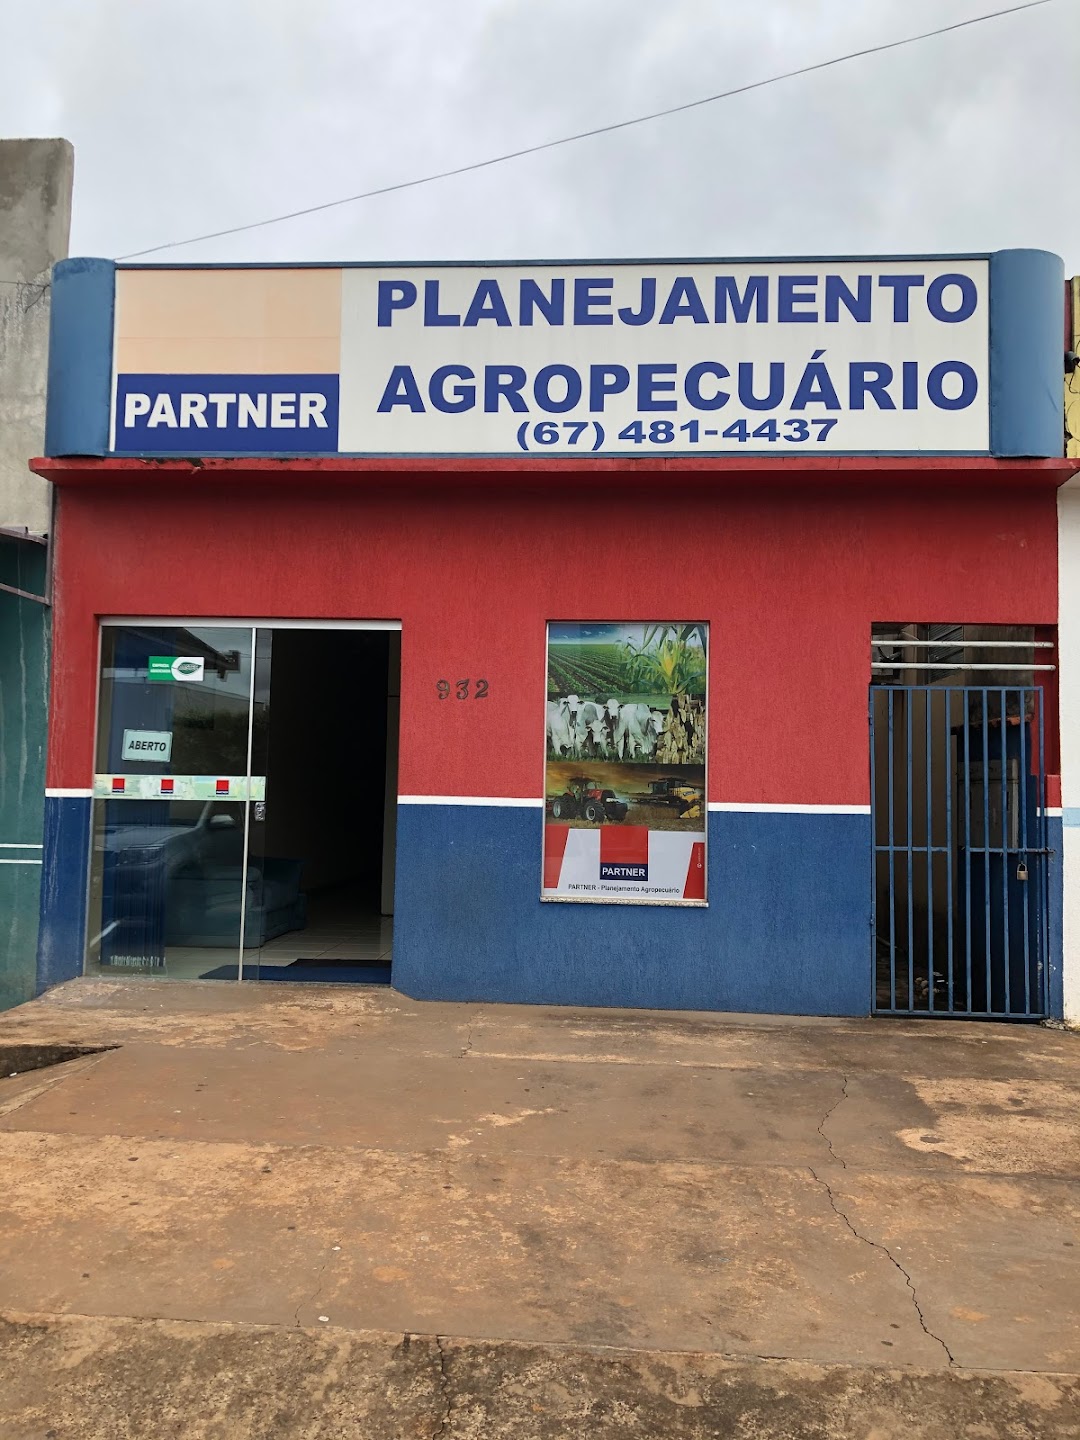 PARTNER PLANEJAMENTO AGROPECUÁRIO